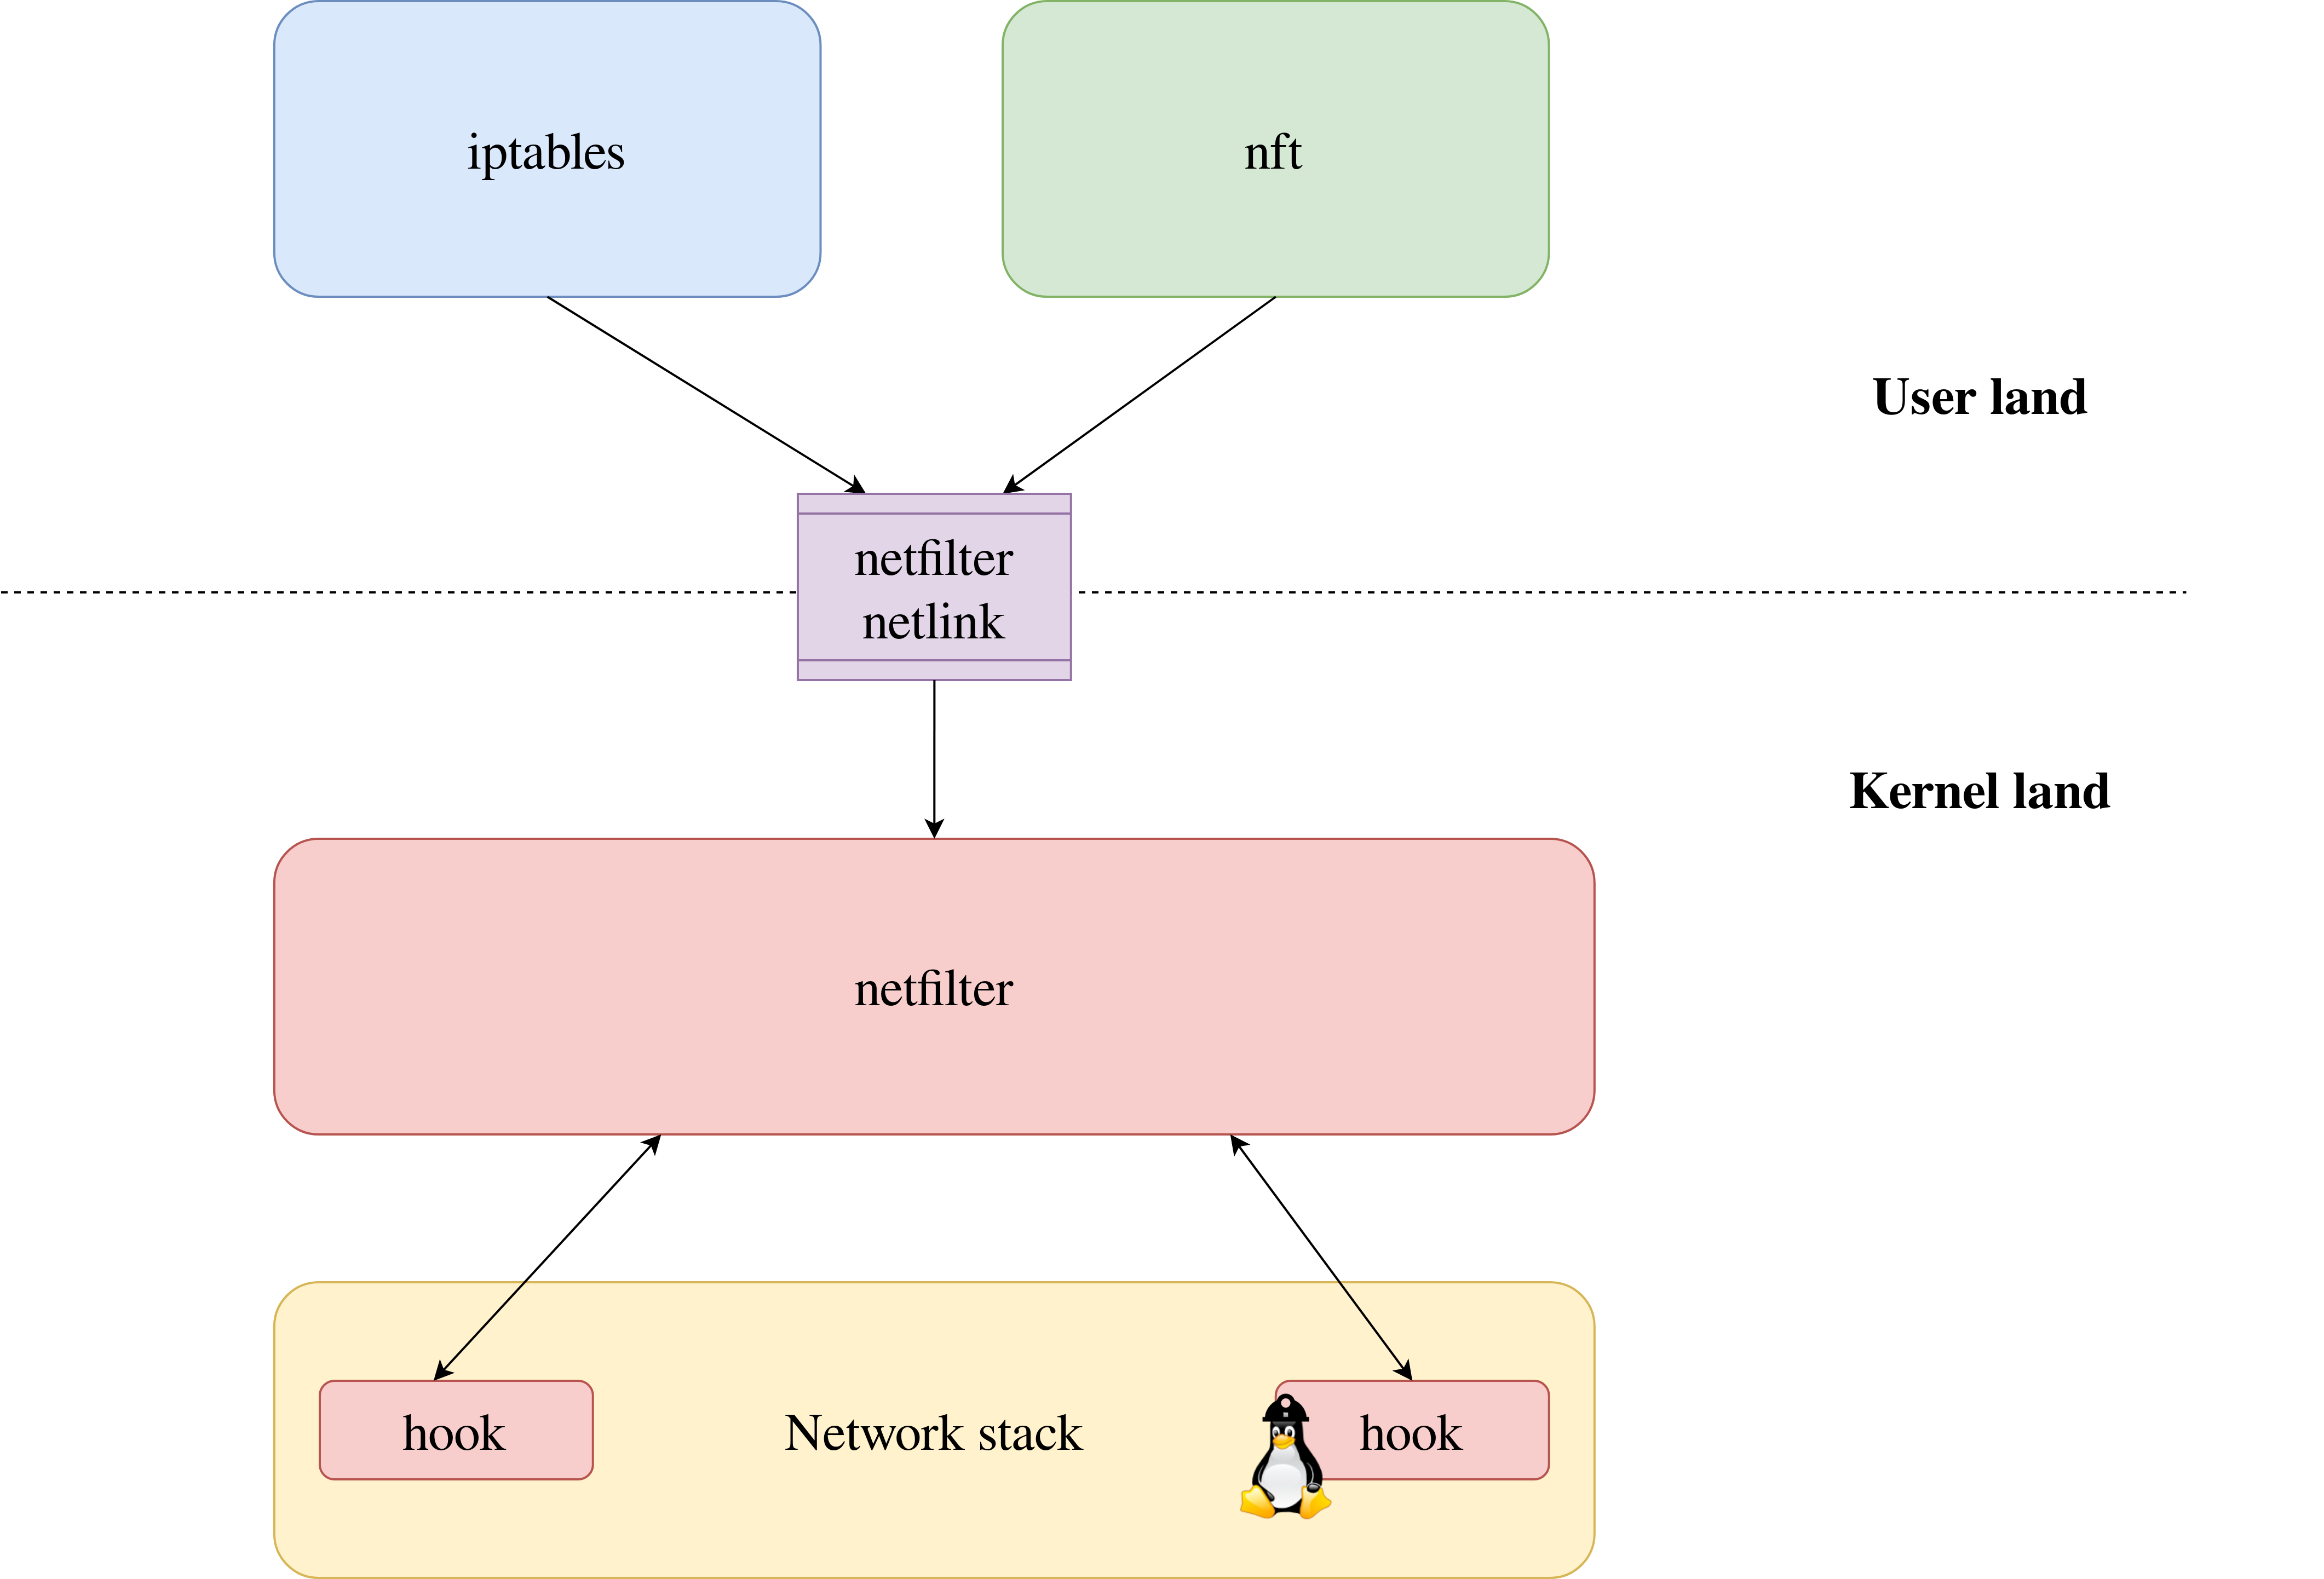 Schema of the netfilter organization